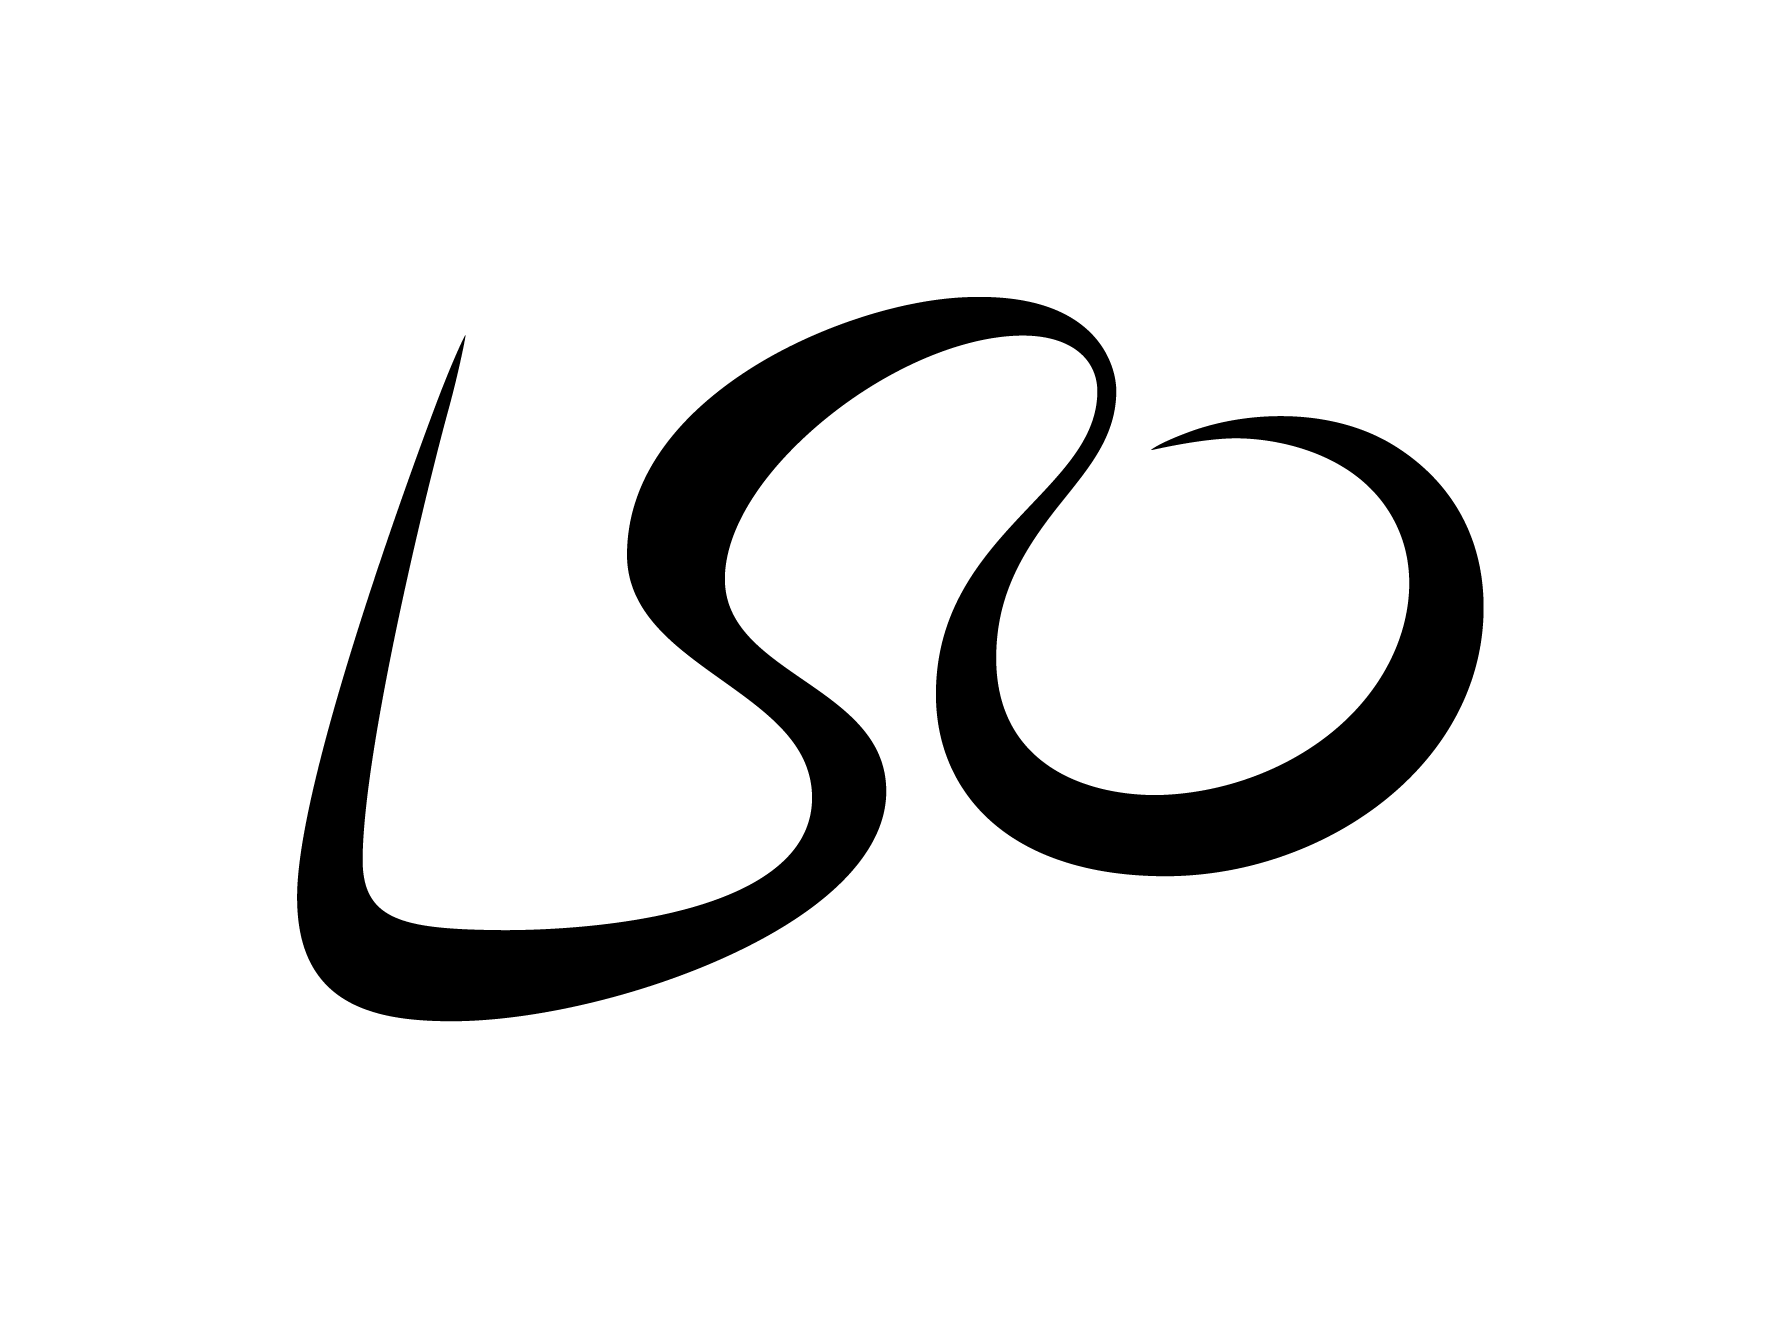 LSO logo